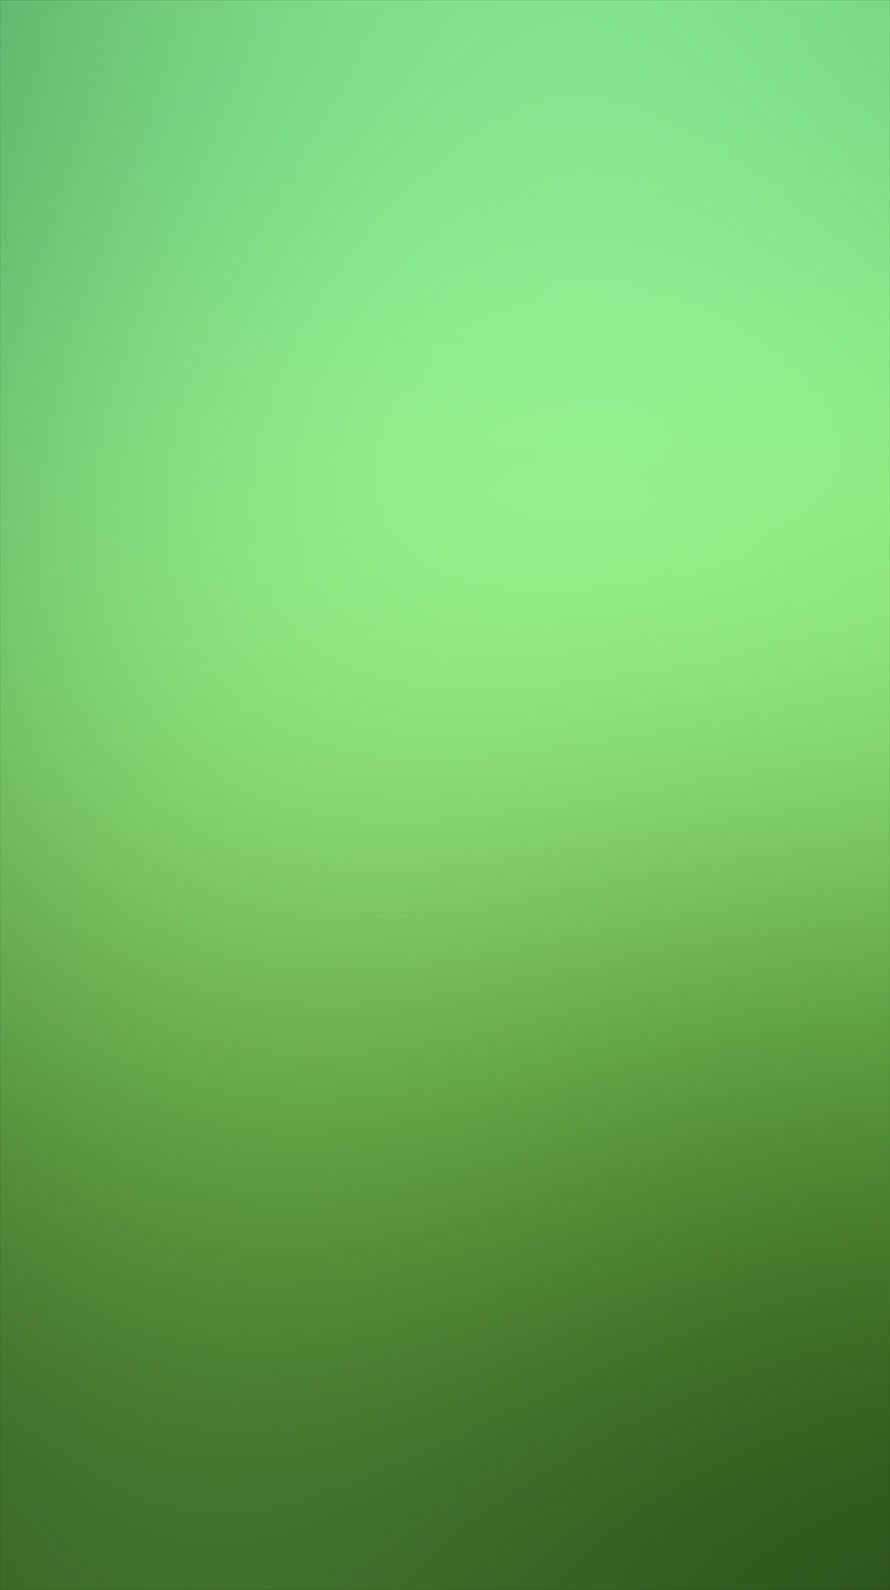 ディズニー画像ランド 驚くばかりiphone 壁紙 緑